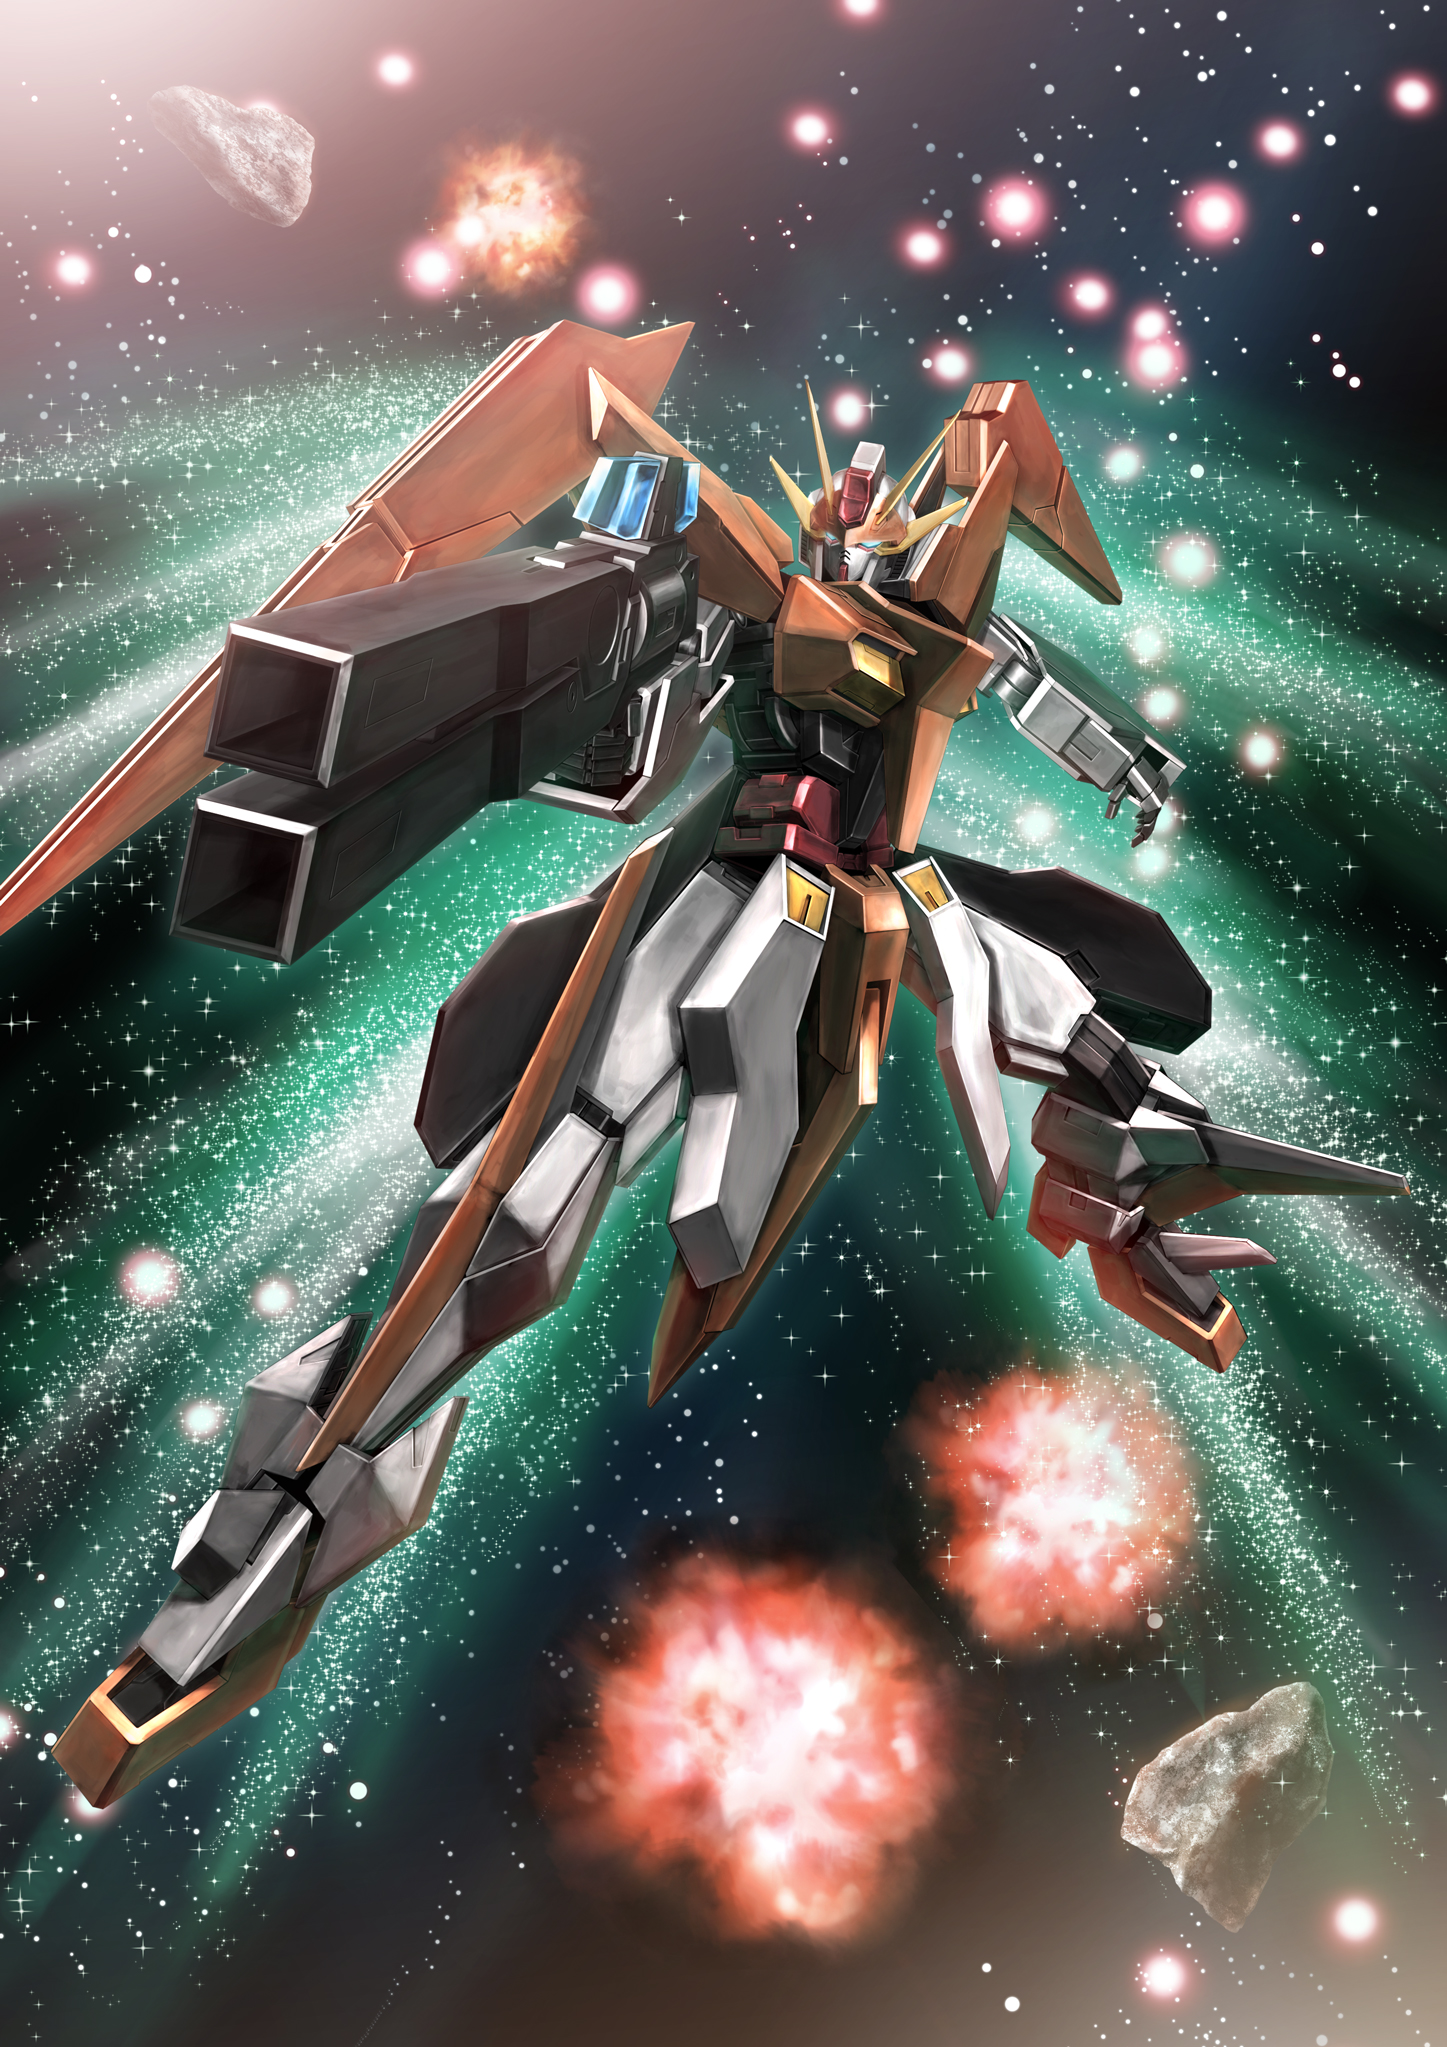 Anime 1447x2047 Arios Gundam anime mechs Gundam Super Robot Taisen Mobile Suit Gundam 00 artwork digital art fan art